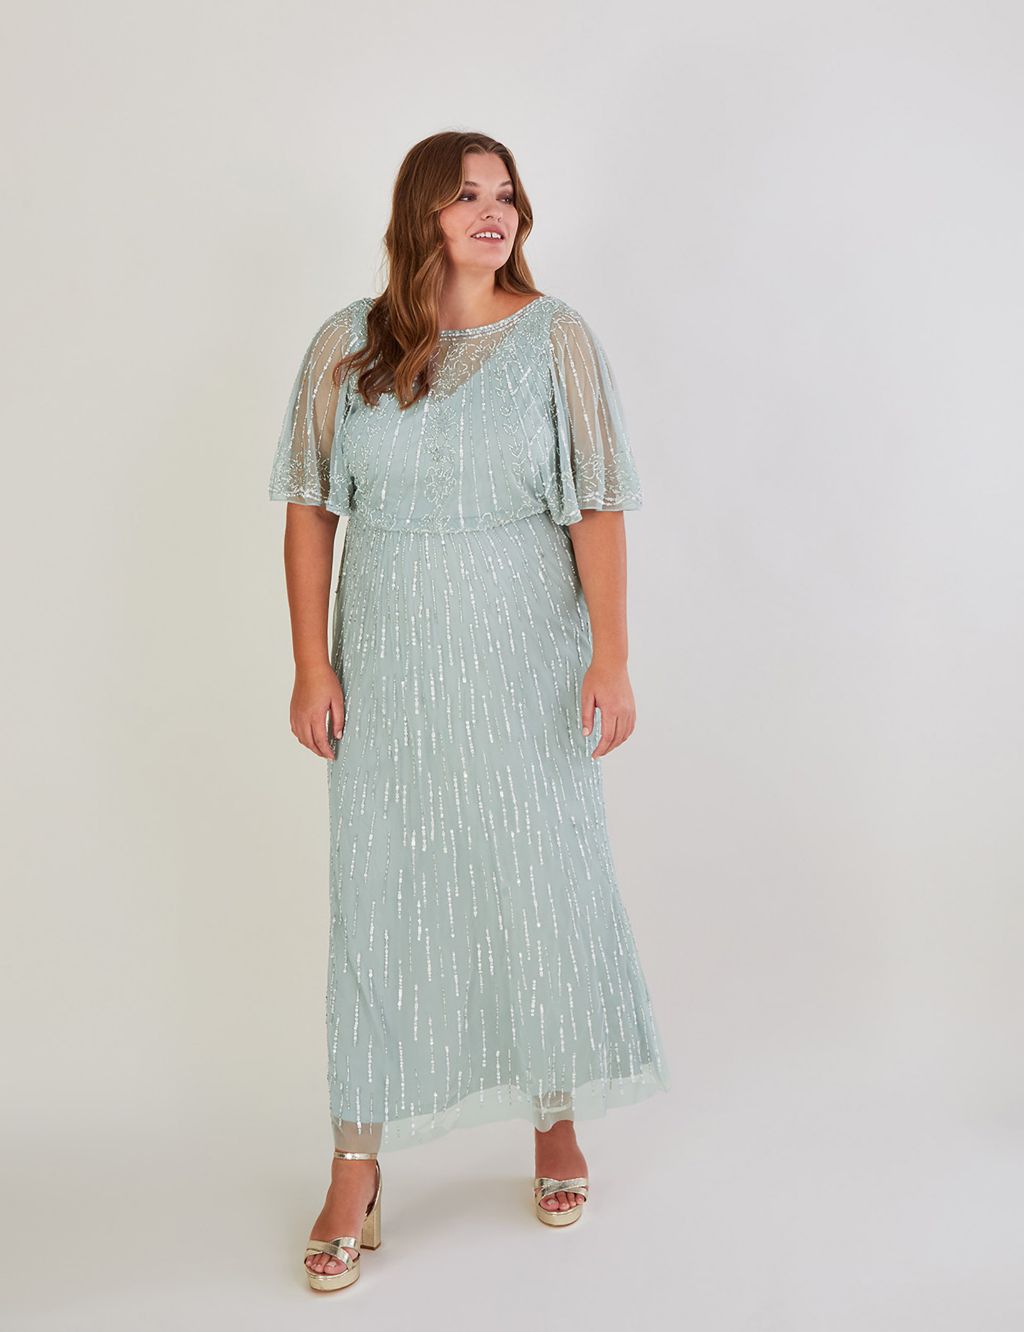 Sequin Embellished Maxi Column Dress image 4